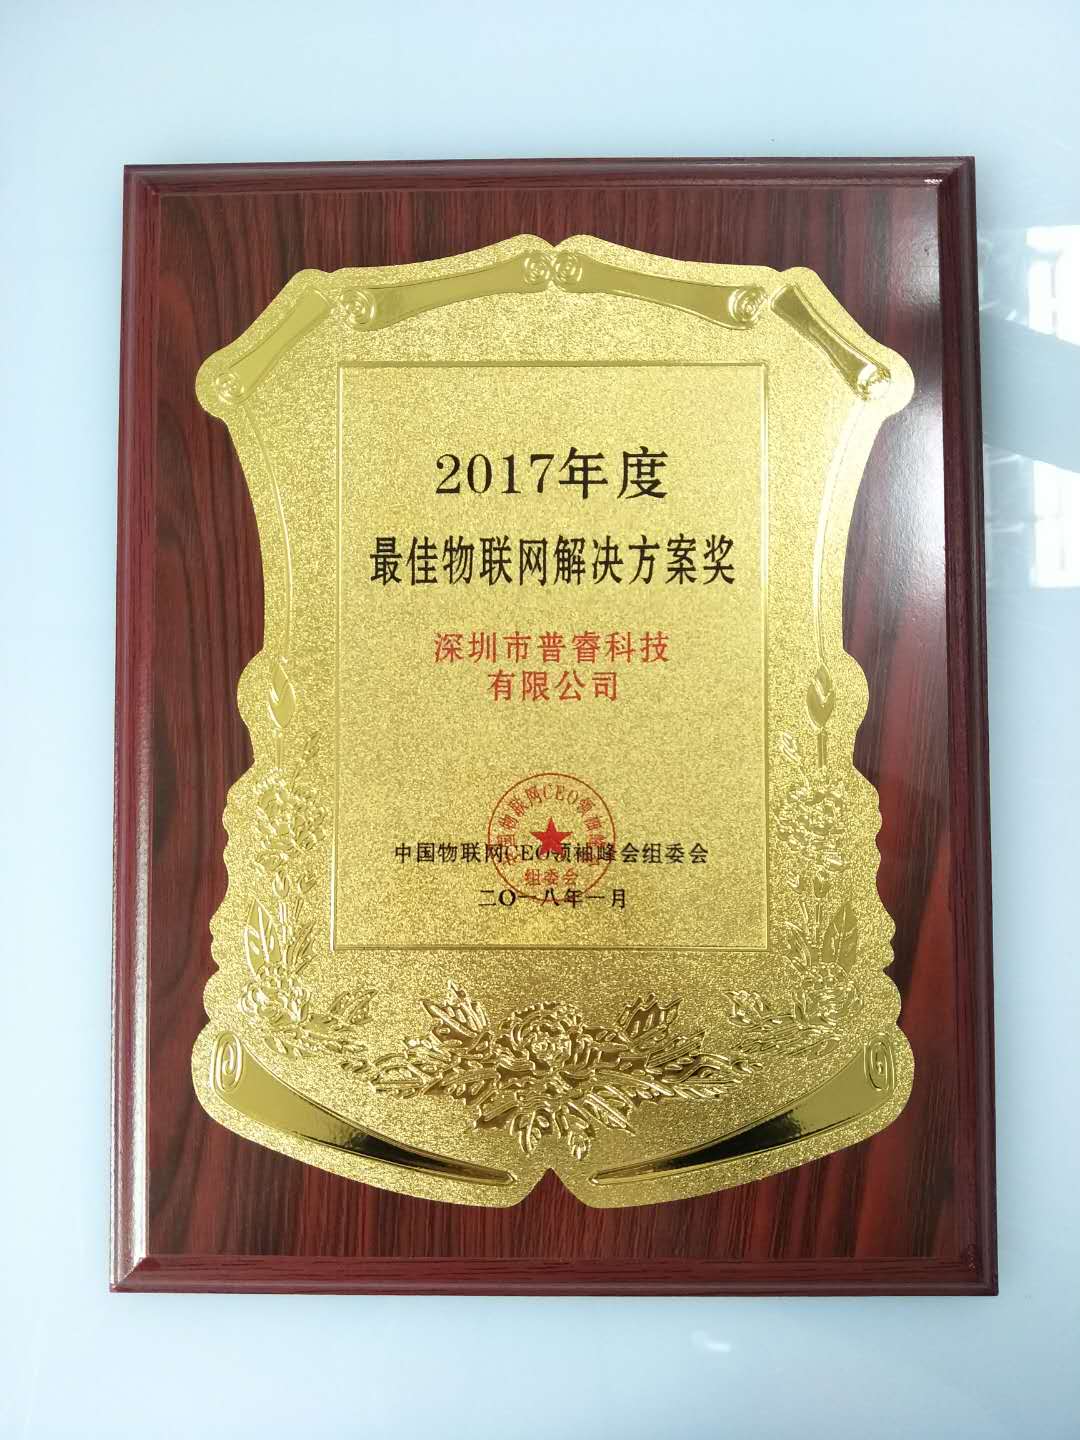 普睿科技荣获“2017年度最佳物联网解决方案奖